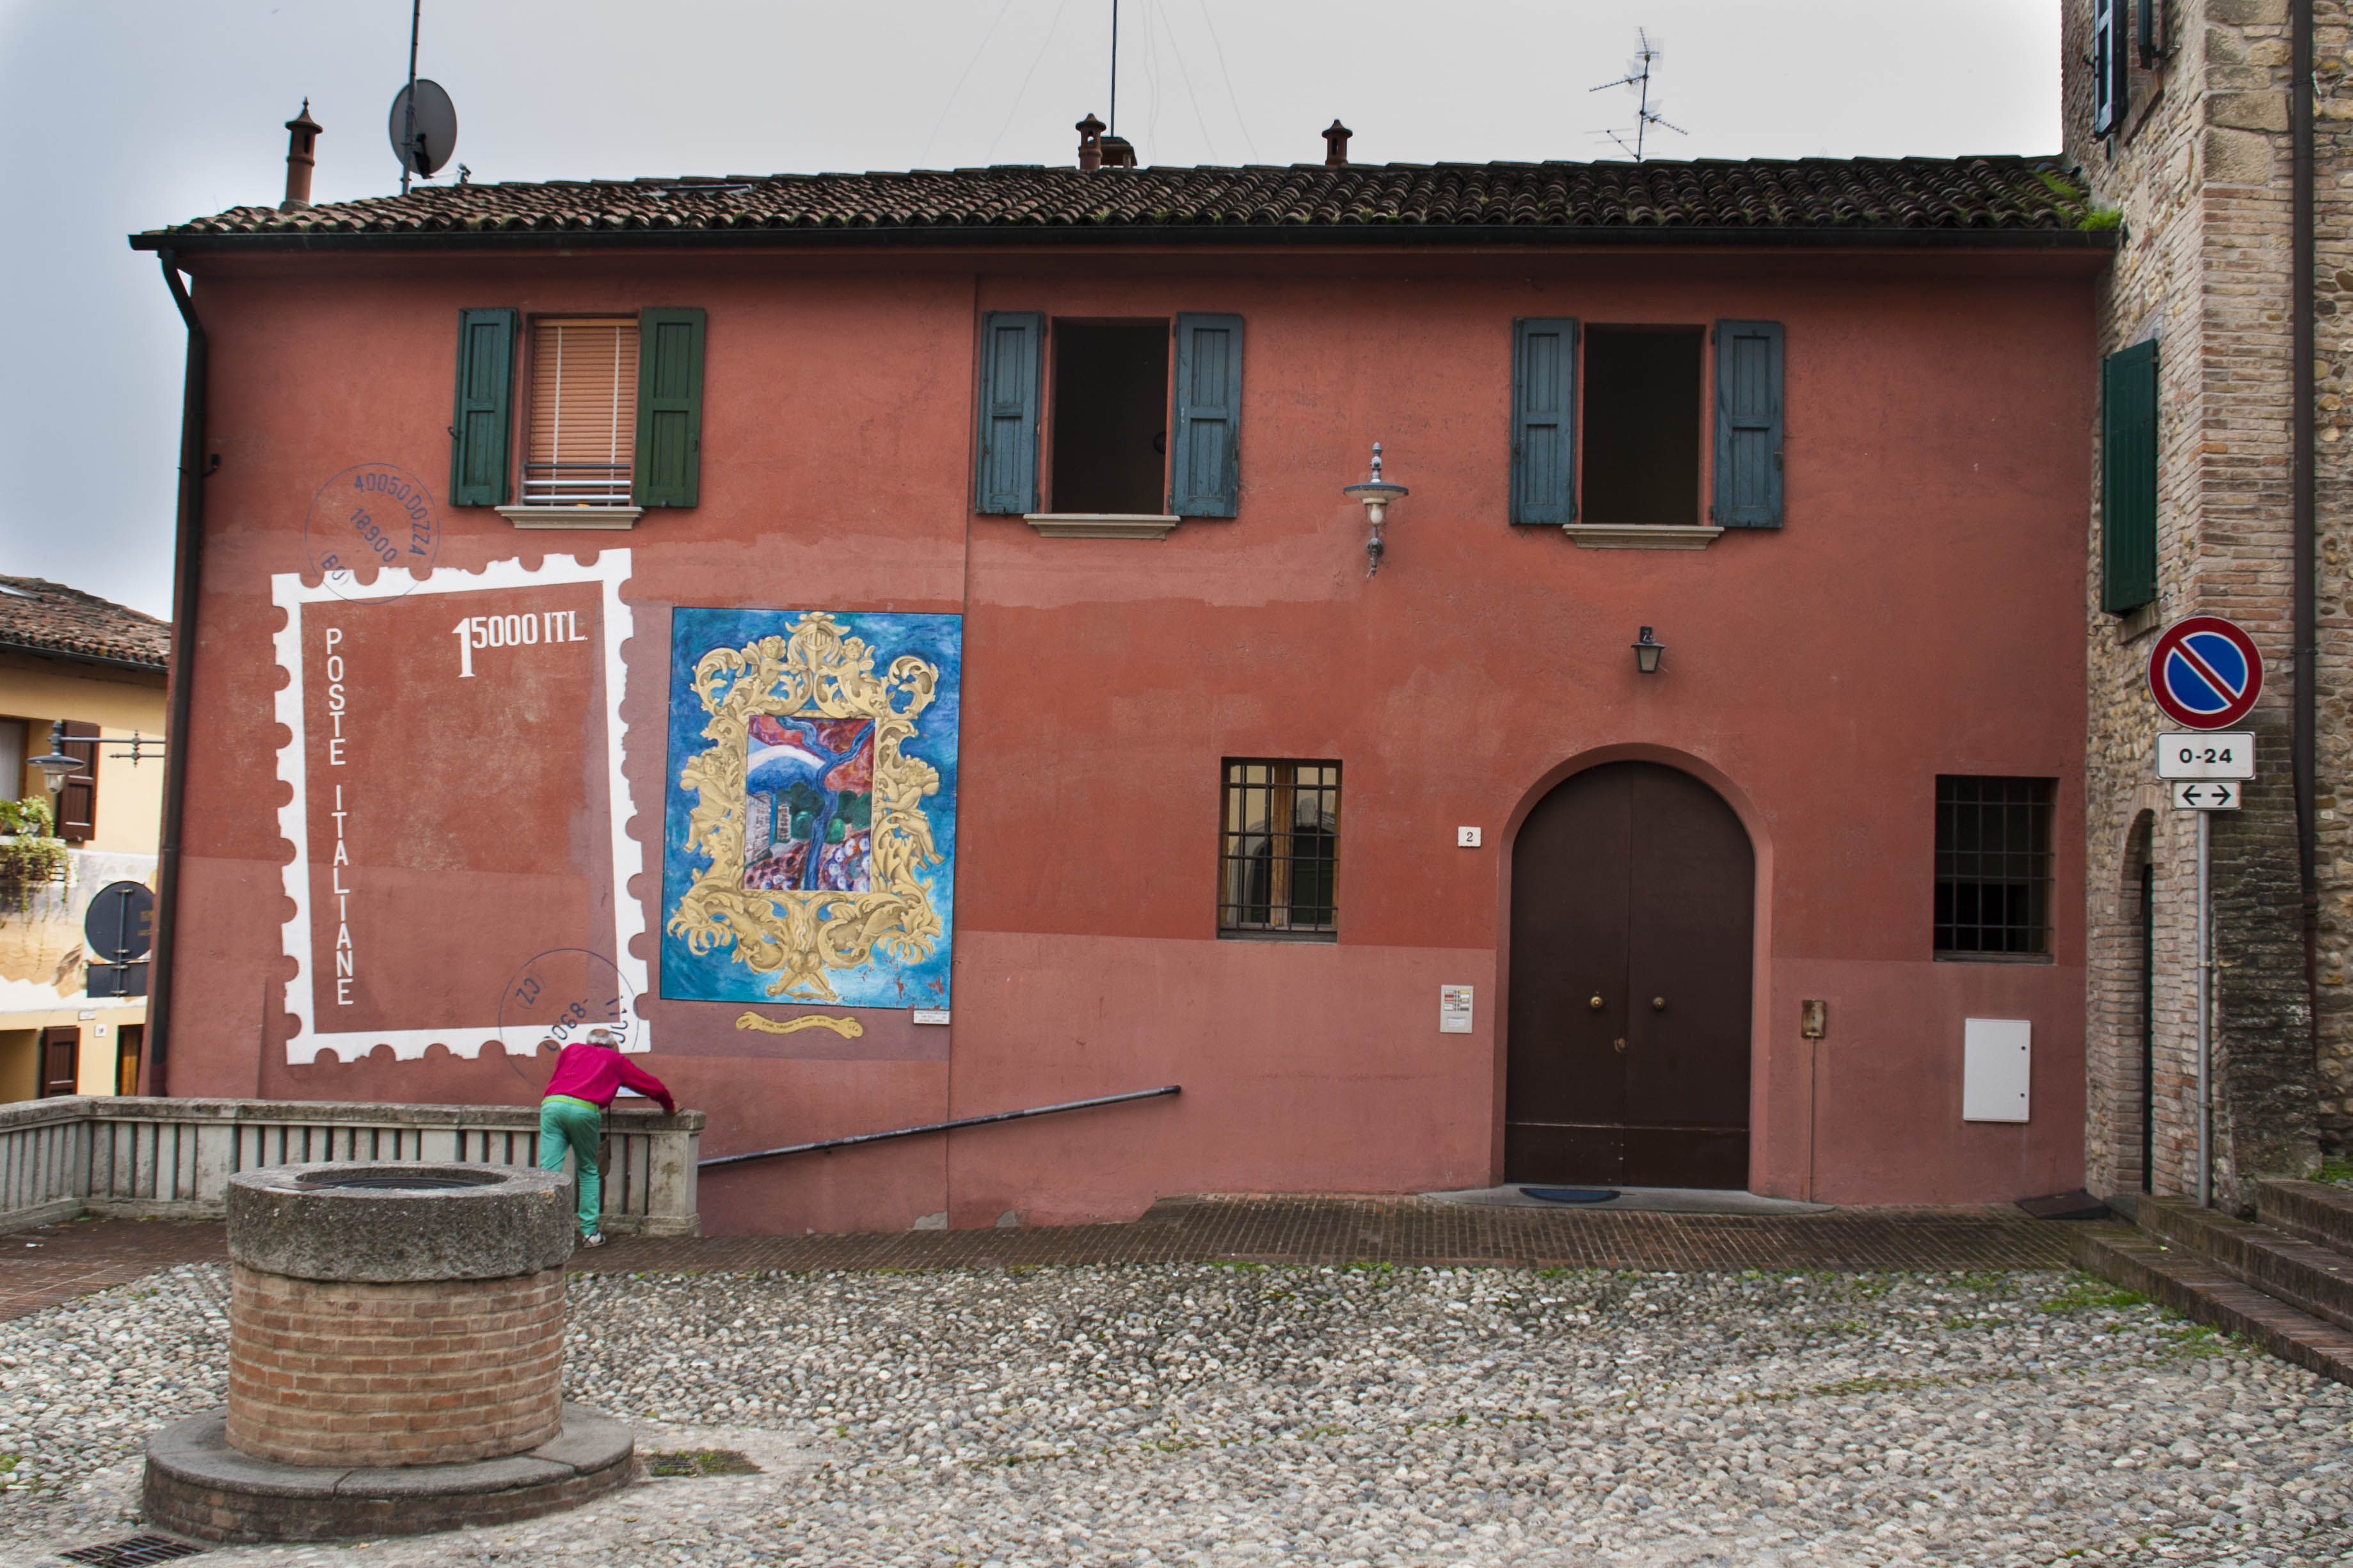 Dozza (Bo) Edificio Strada Borgo Dozza il paese dai muri come quadri